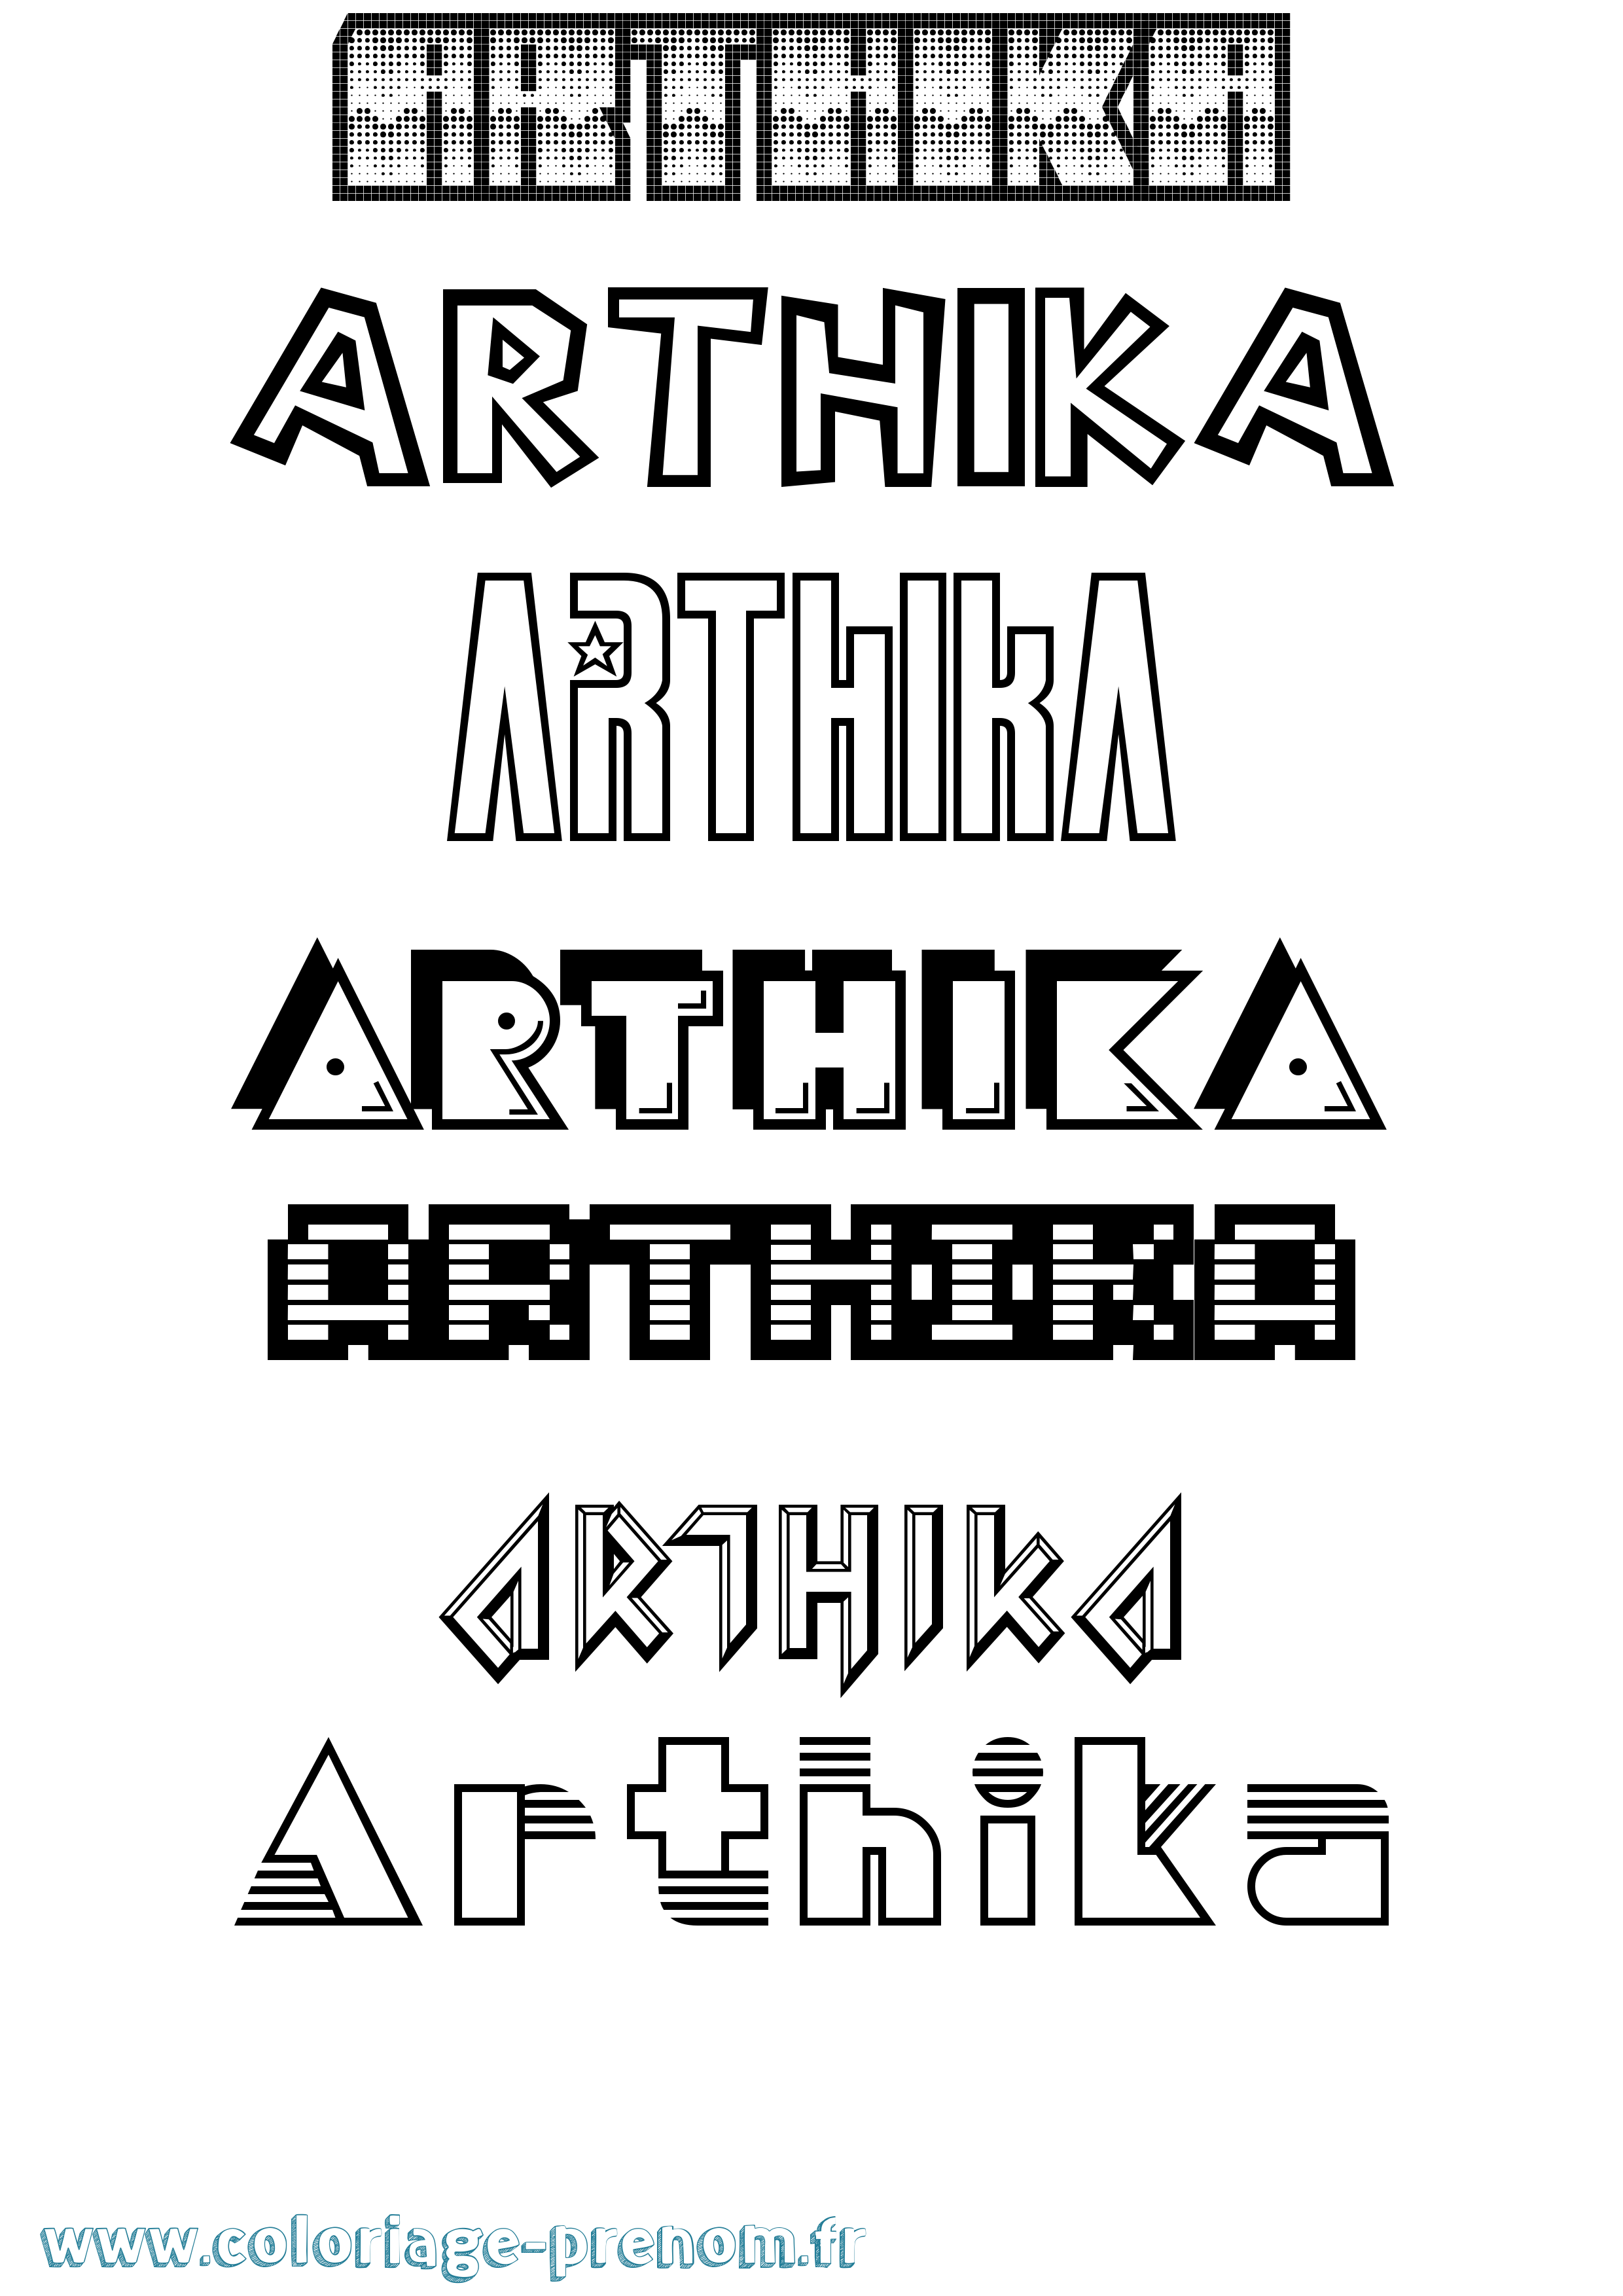 Coloriage prénom Arthika Jeux Vidéos